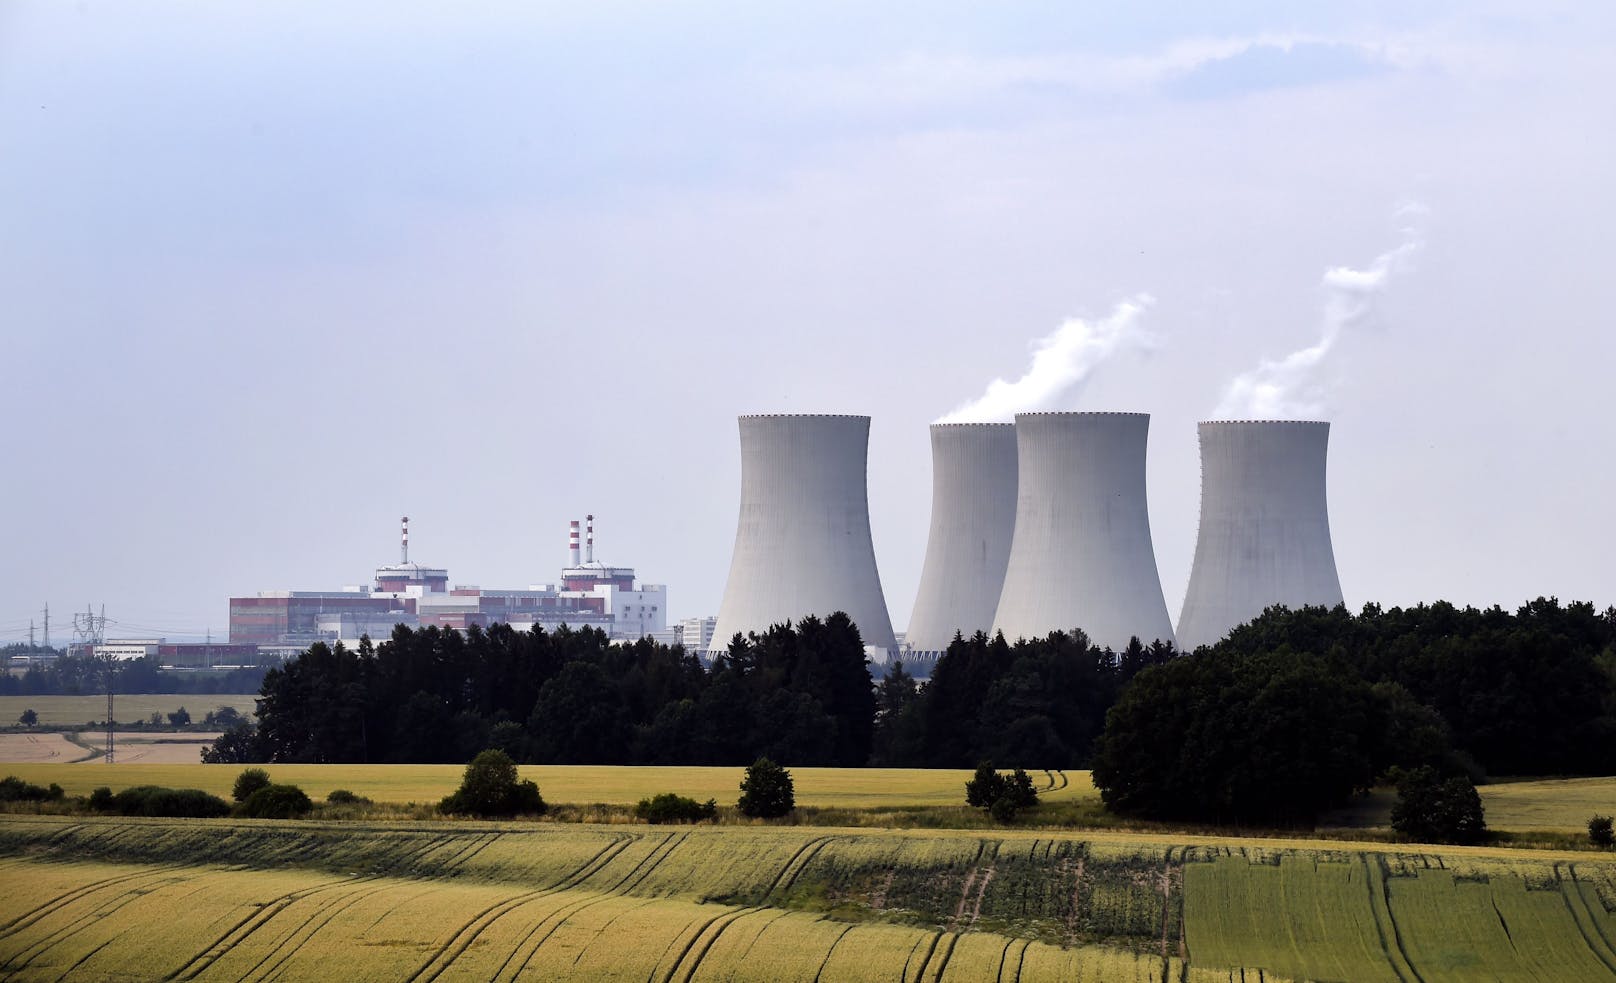 Das AKW Temelín liegt 24 km nördlich von Ceske Budejovice in der Region Südböhmen, Tschechien und liegt 50 km von der österreichischen und 60 km von der deutschen Grenze.  Es ist hinsichtlich der Leistung mit 2026 MW das größte Kraftwerk in Tschechien.